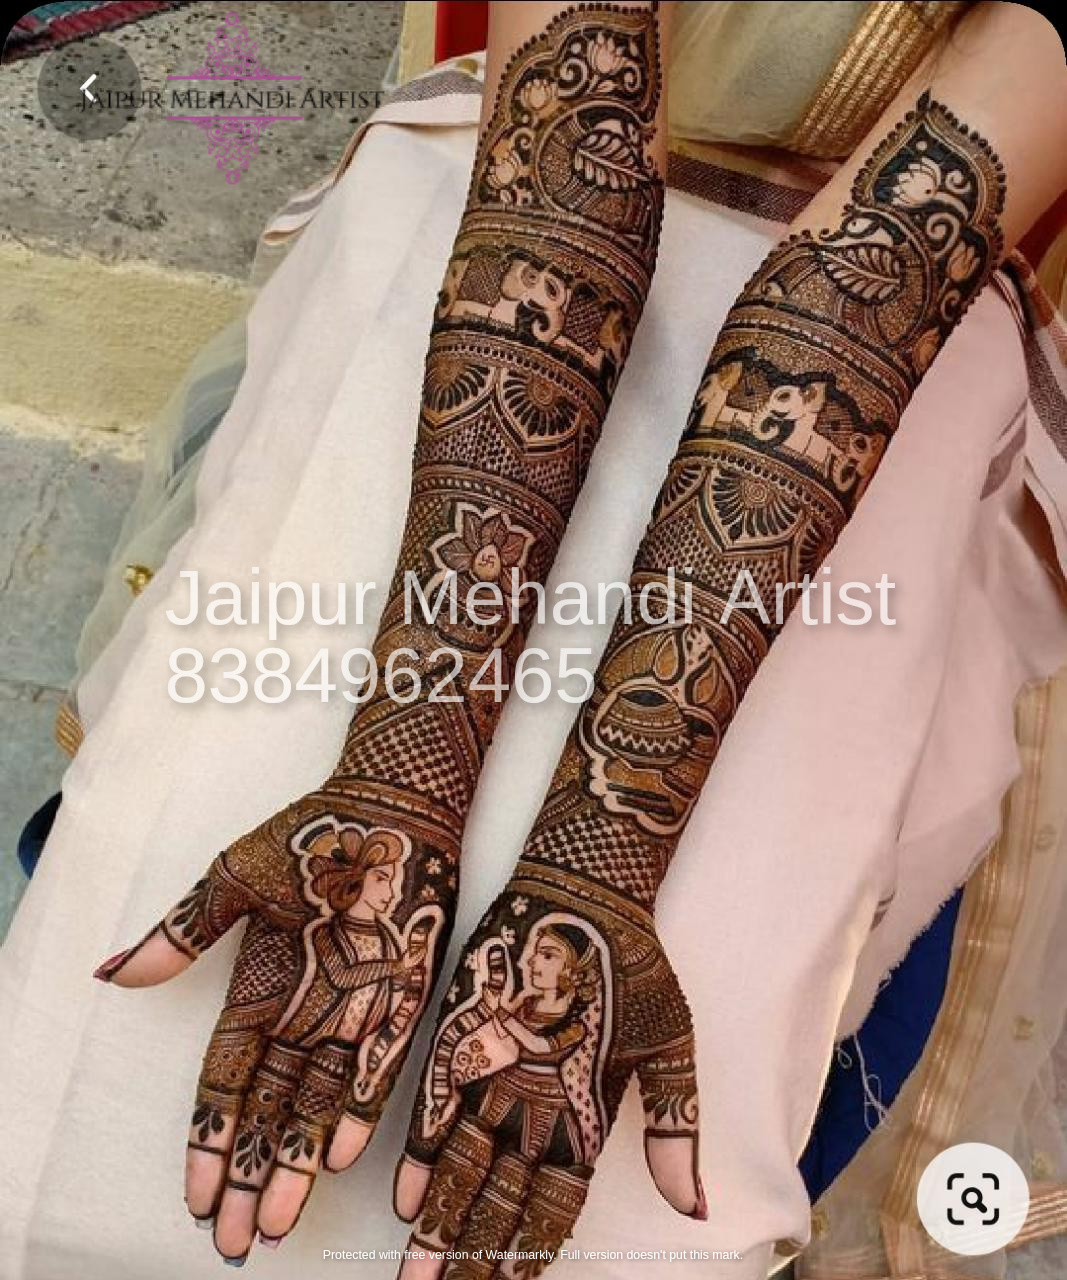 Jaipuri Mehendi Designer in Kamla Nagar,Agra - Best Mehendi Artists in Agra  - Justdial